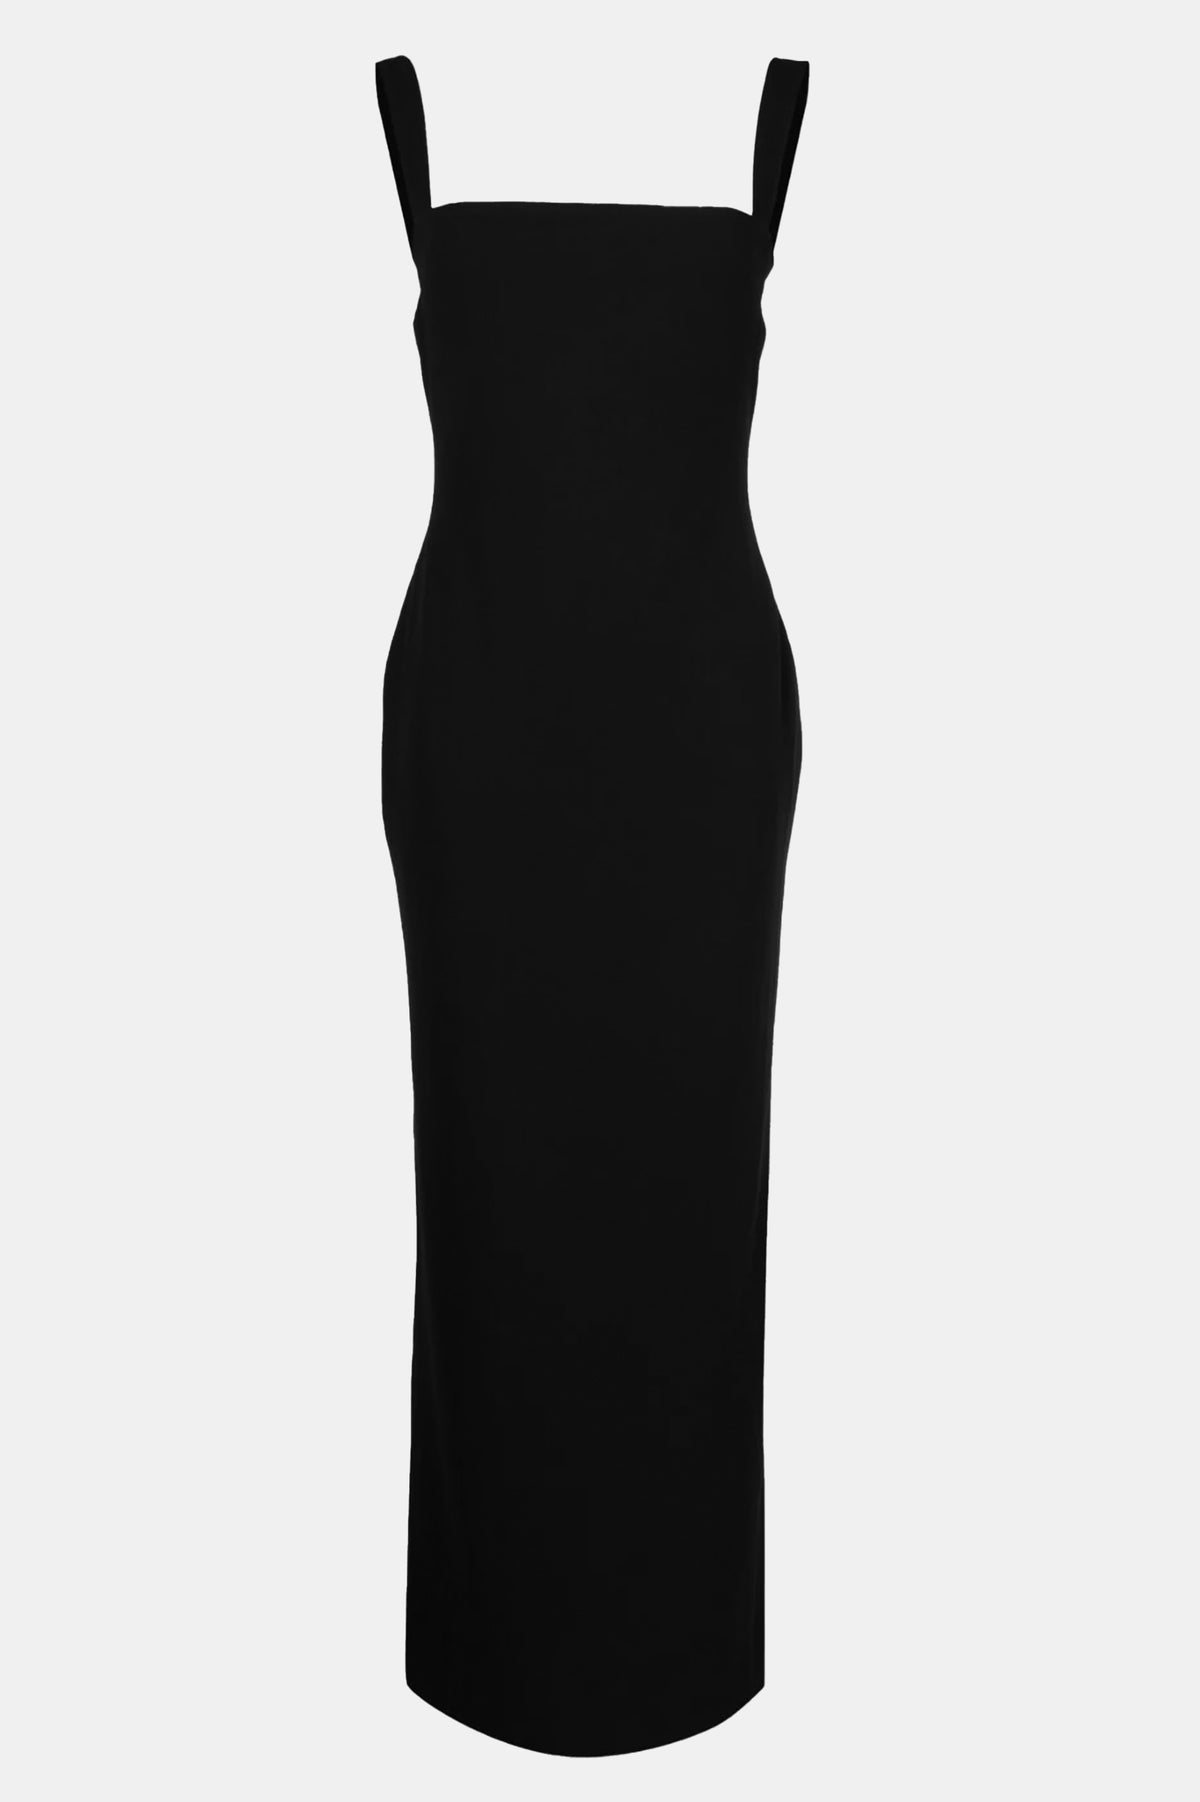 Joni Knit Dress in Black